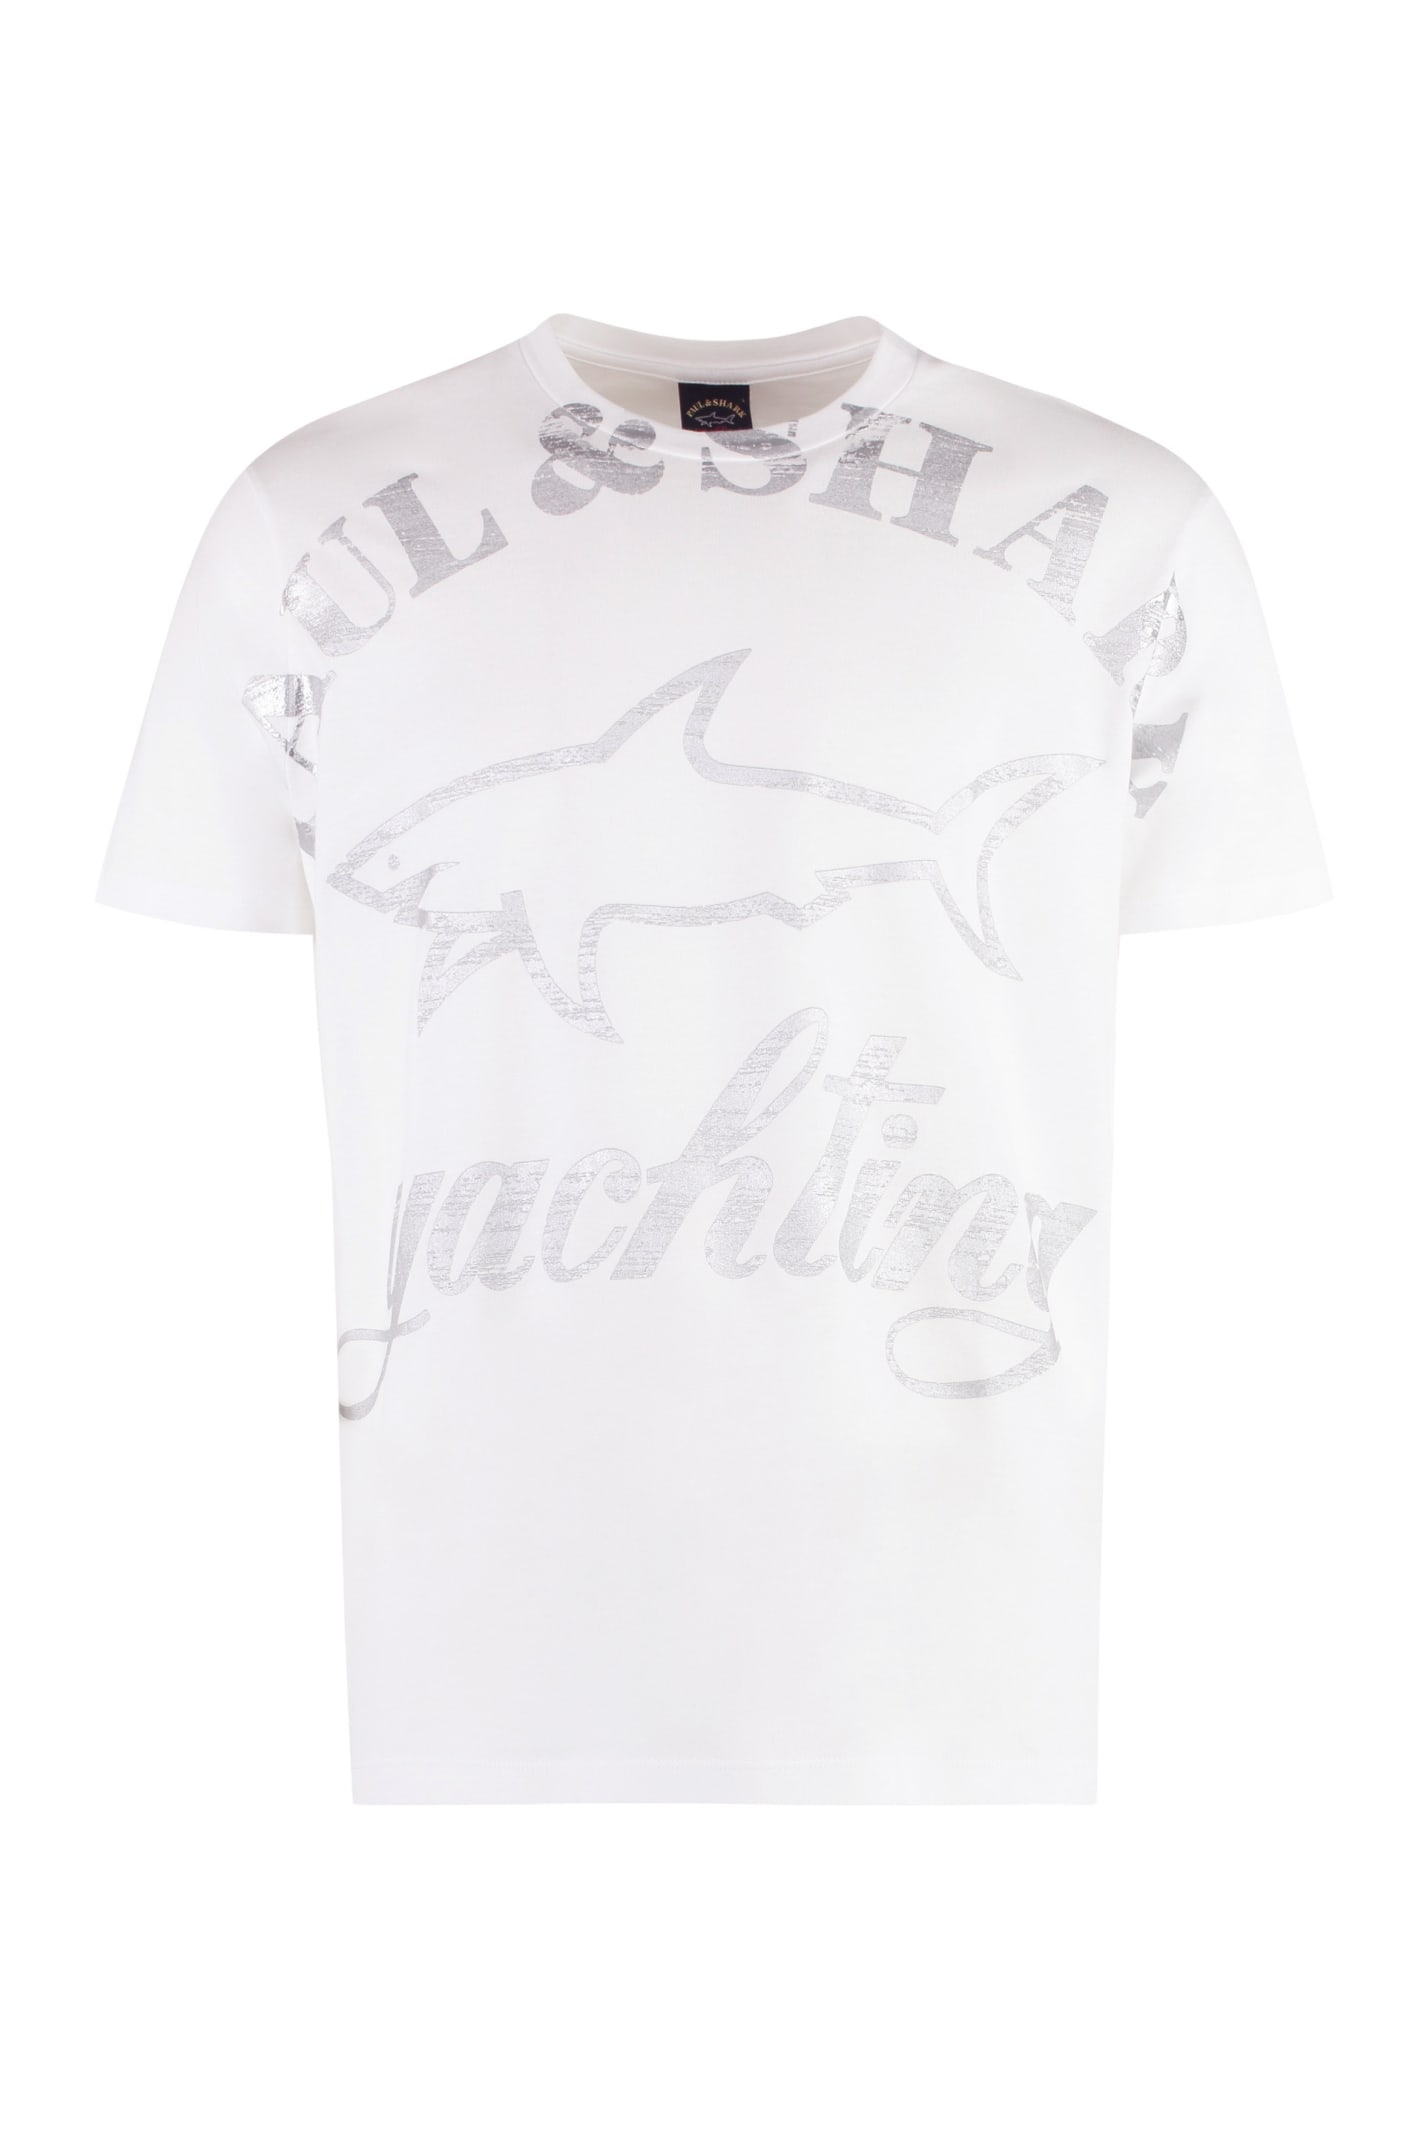 Paul&amp;shark Logo Cotton T-shirt In White